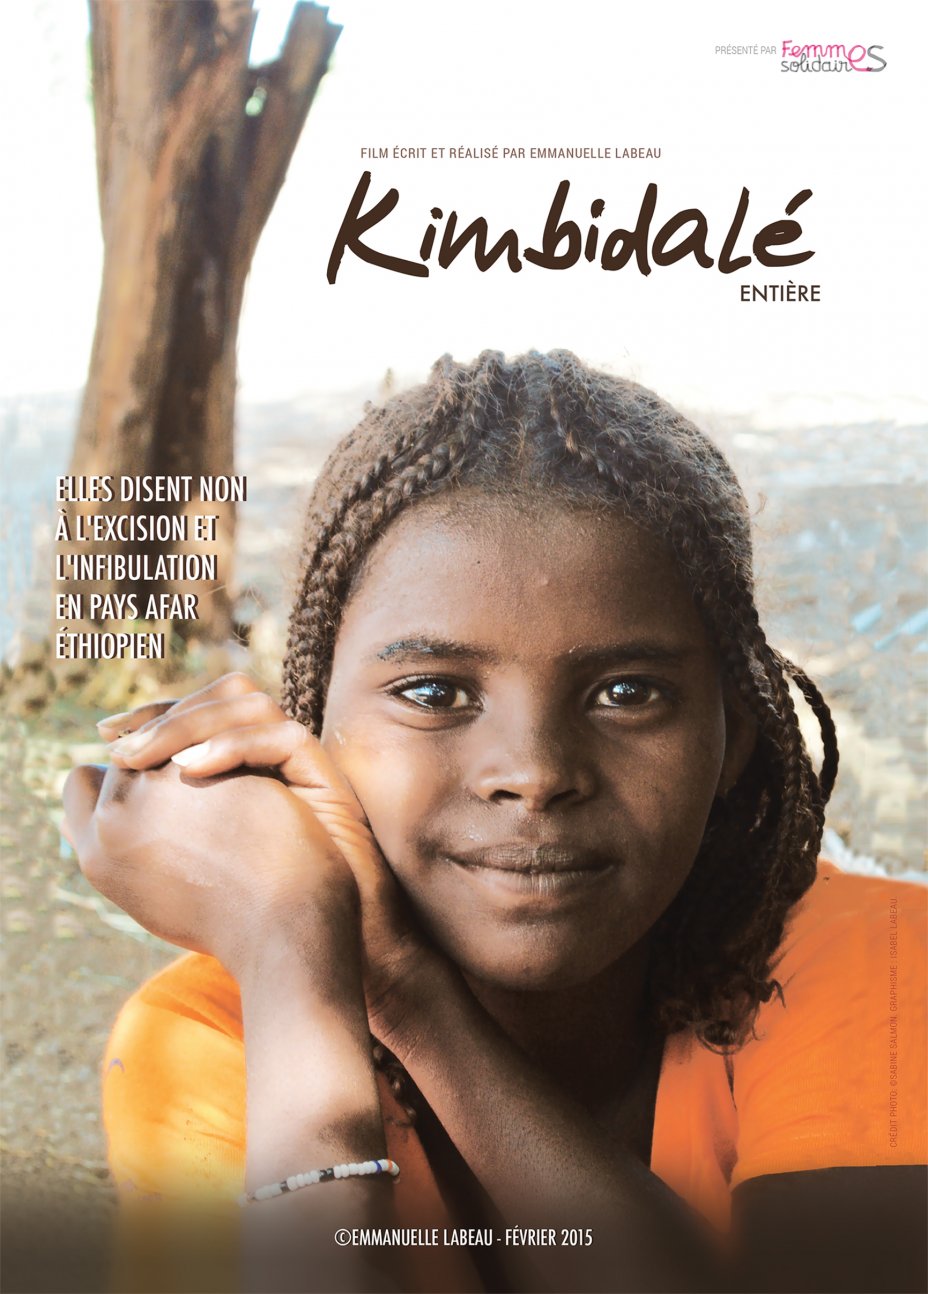 Film documentaire Kimbidal d'Emmanuelle Labeau